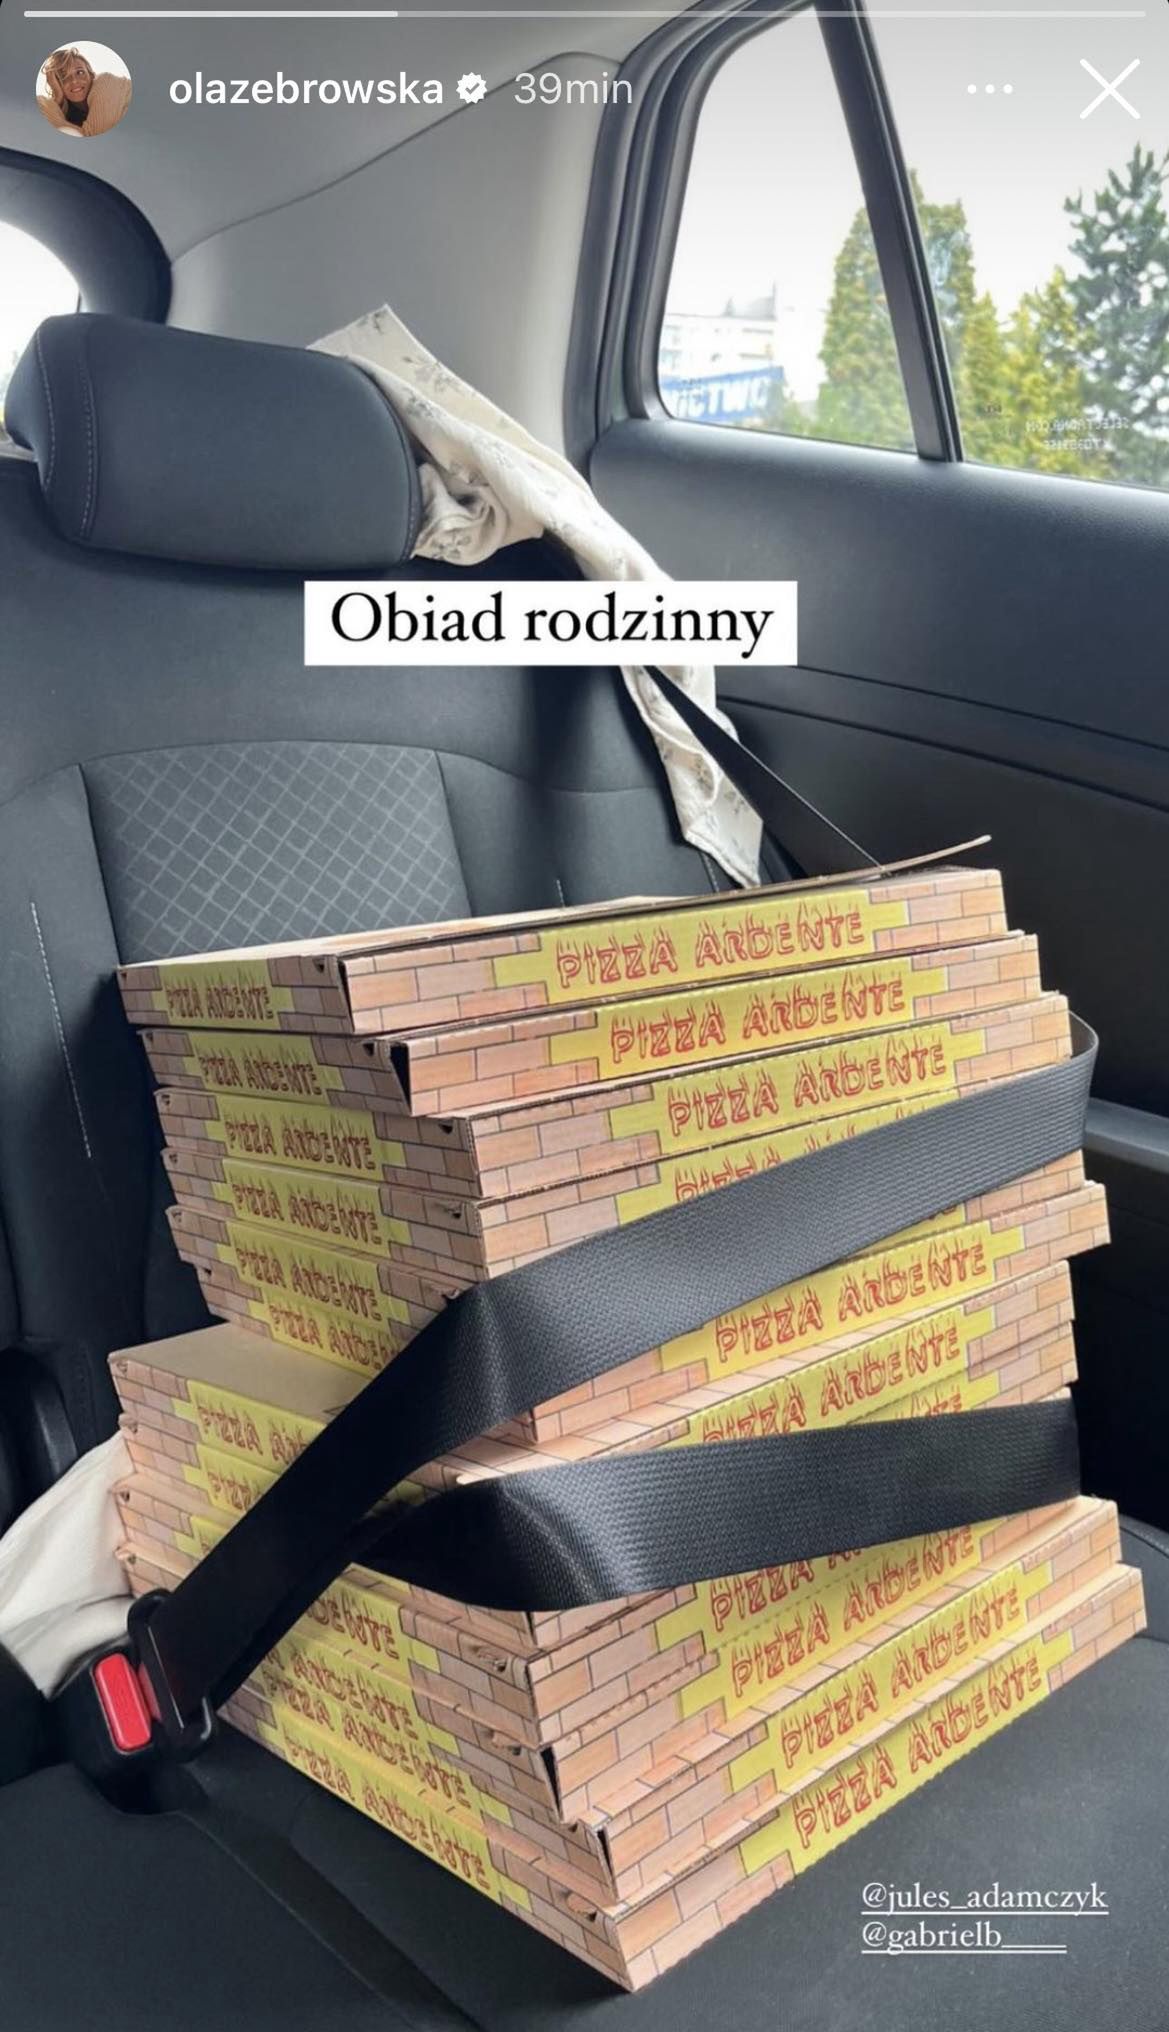 Aleksandra Żebrowska kupiła na niedzielny obiad pizzę 